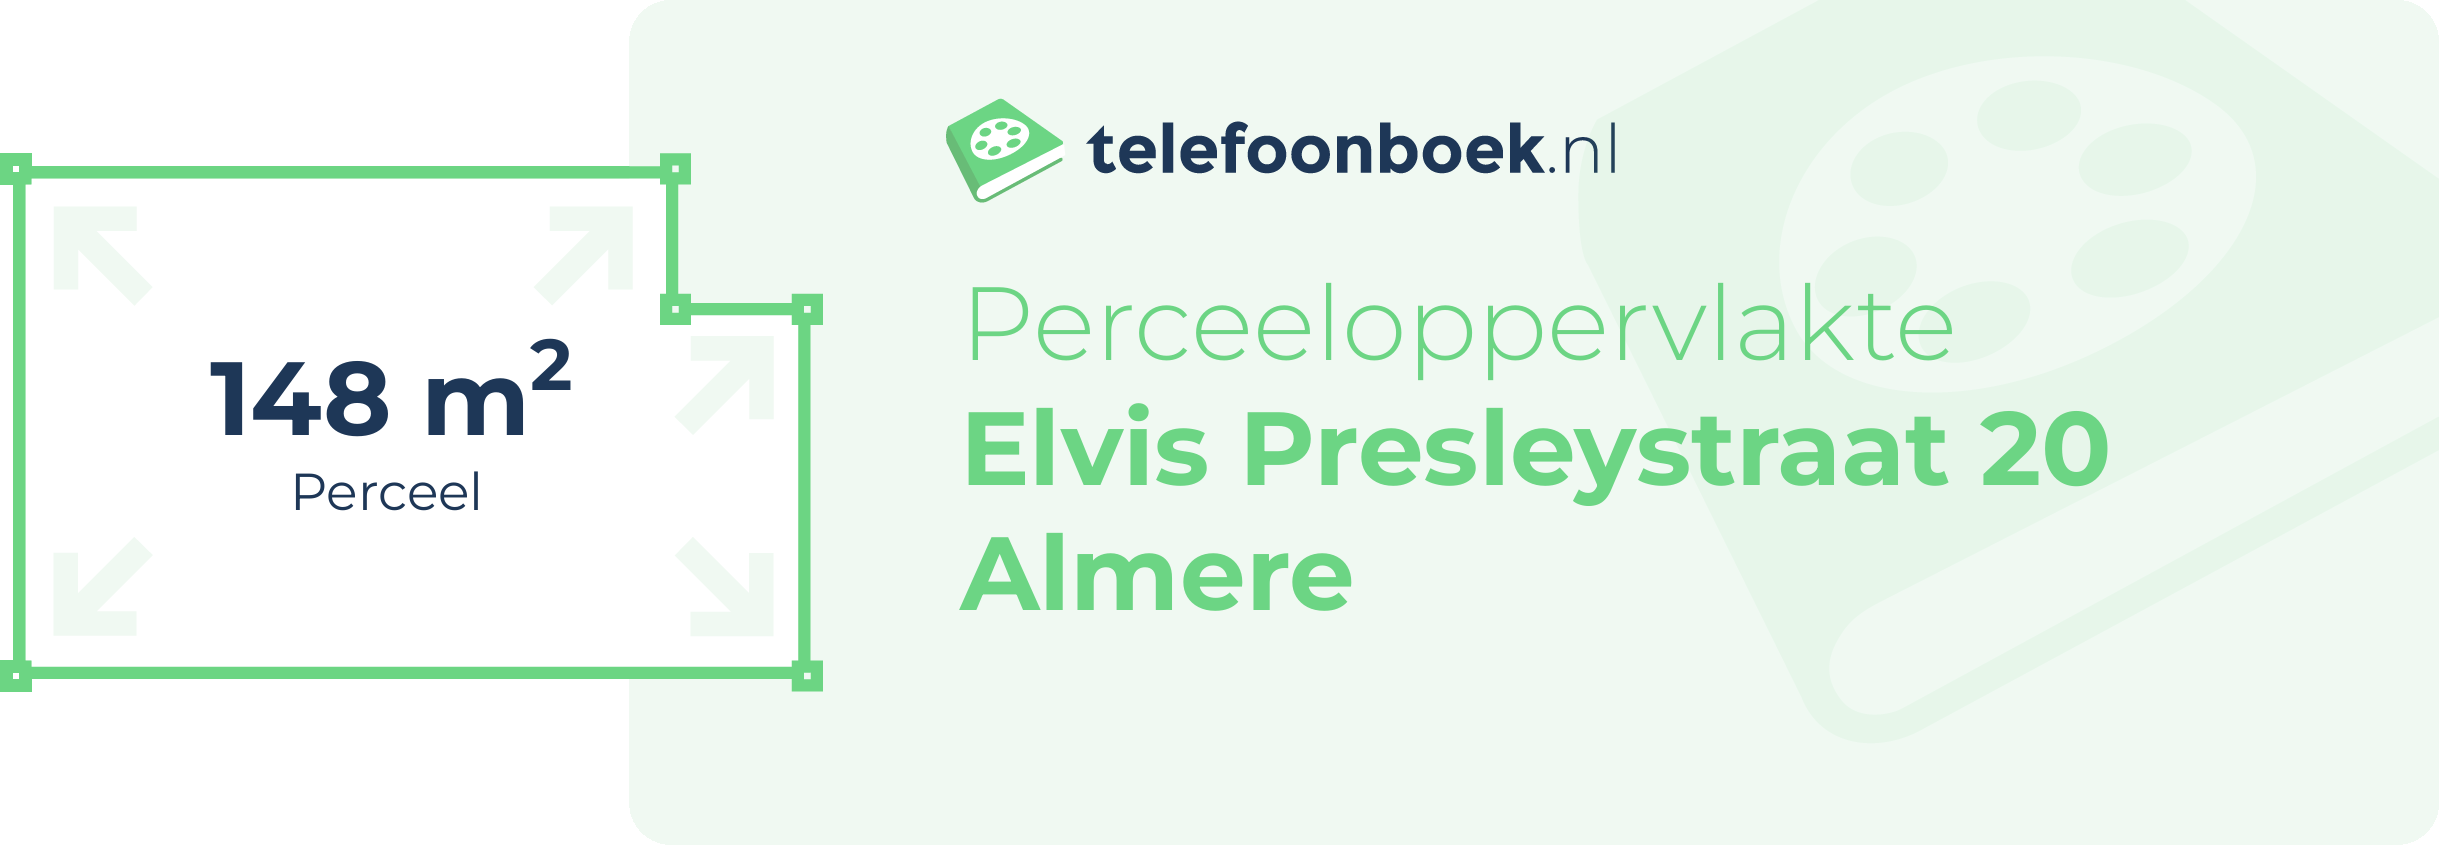 Perceeloppervlakte Elvis Presleystraat 20 Almere